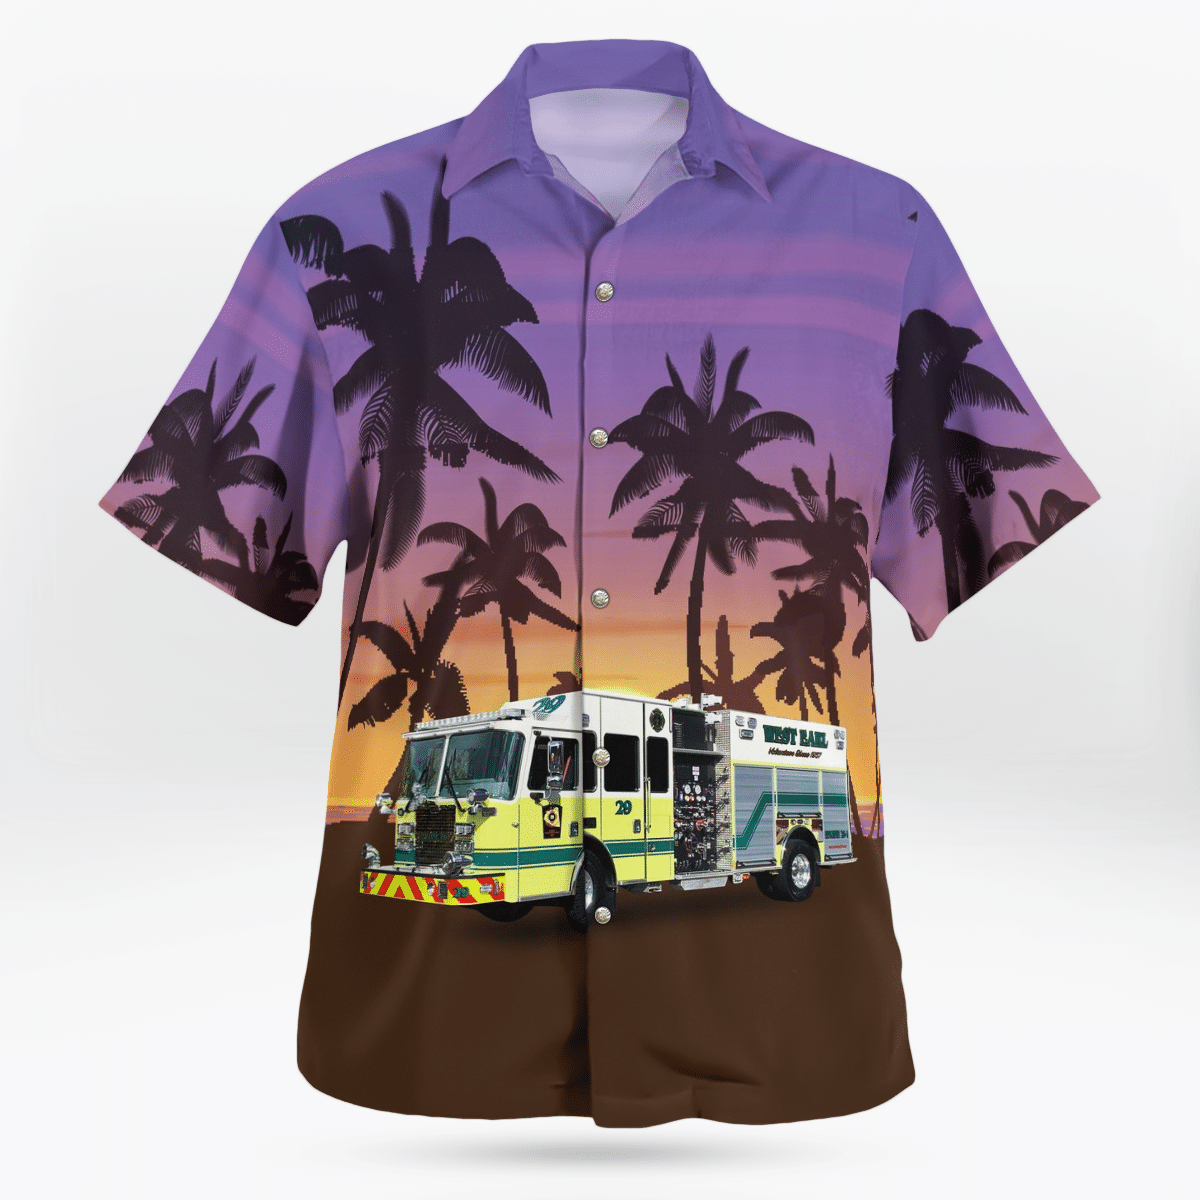 HOT Brownstown Pennsylvania West Earl Fire Station 29 Hawaiian Shirt2